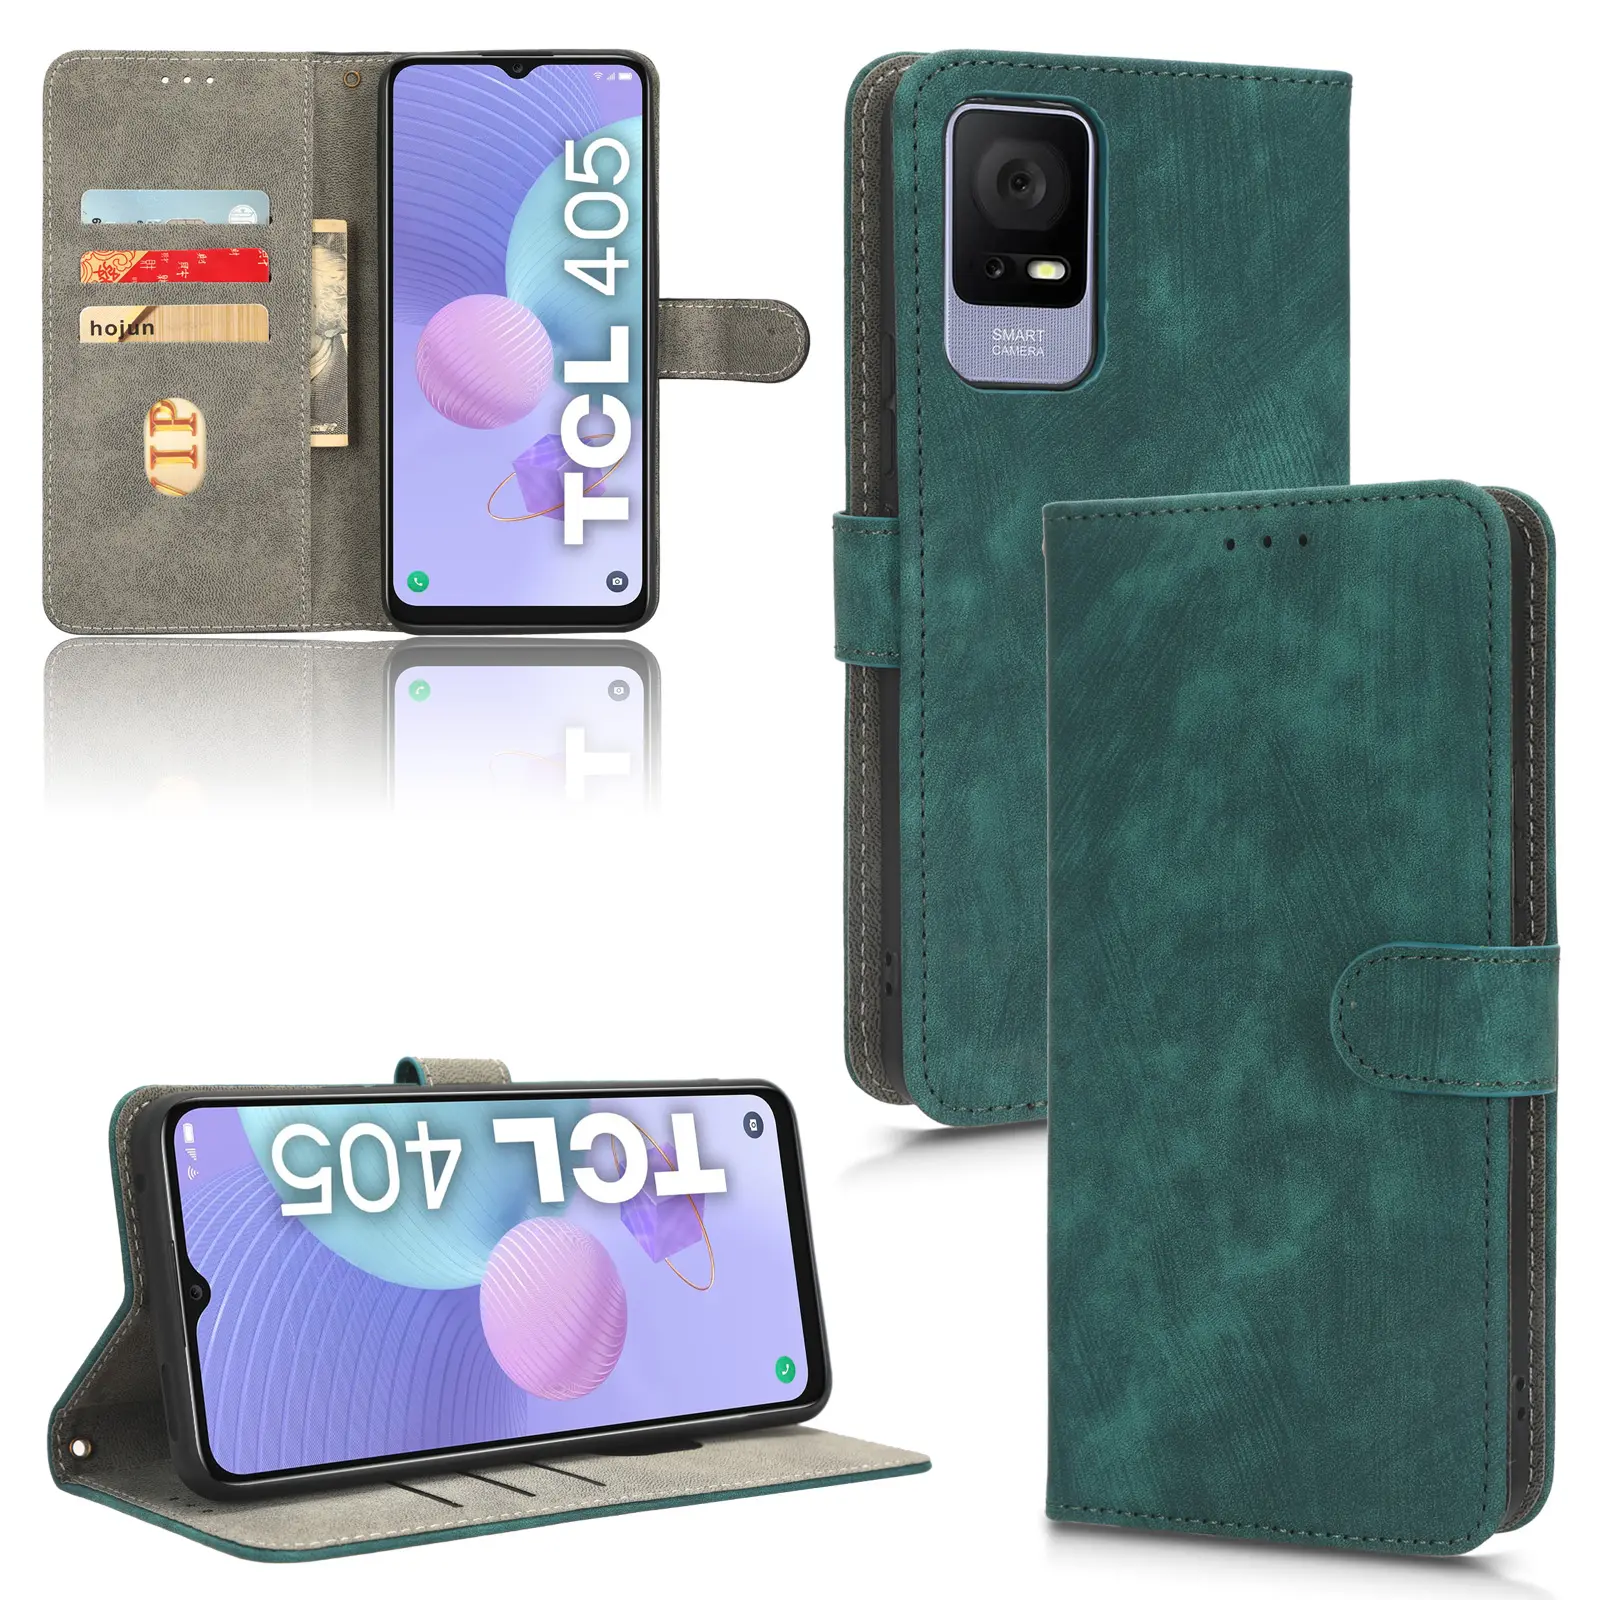 Bảo vệ máy ảnh da trường hợp RFID chặn chủ thẻ Wallet trường hợp đối với TCL 405/TCL 406/t506d/TCL 408 da điện thoại trường hợp bìa